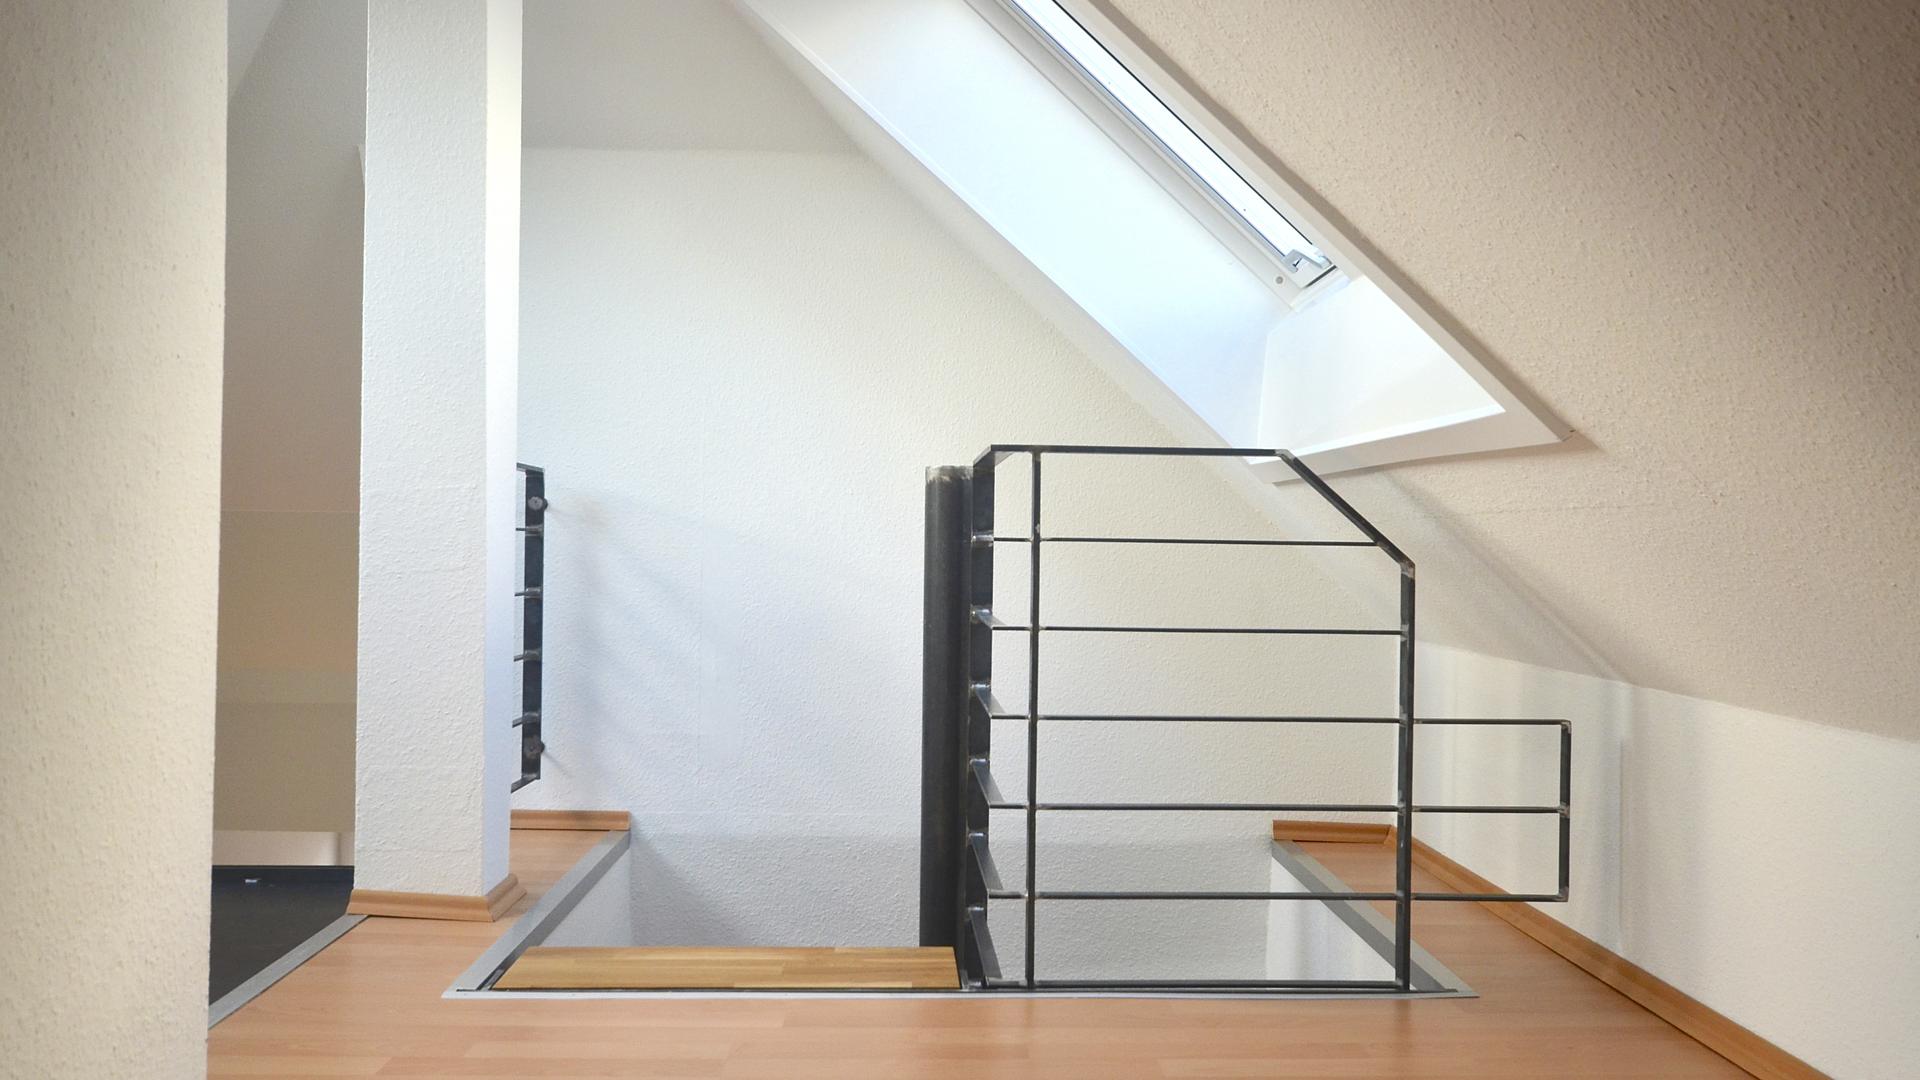 Bild: Treppenabgang des ausgebauten Raums